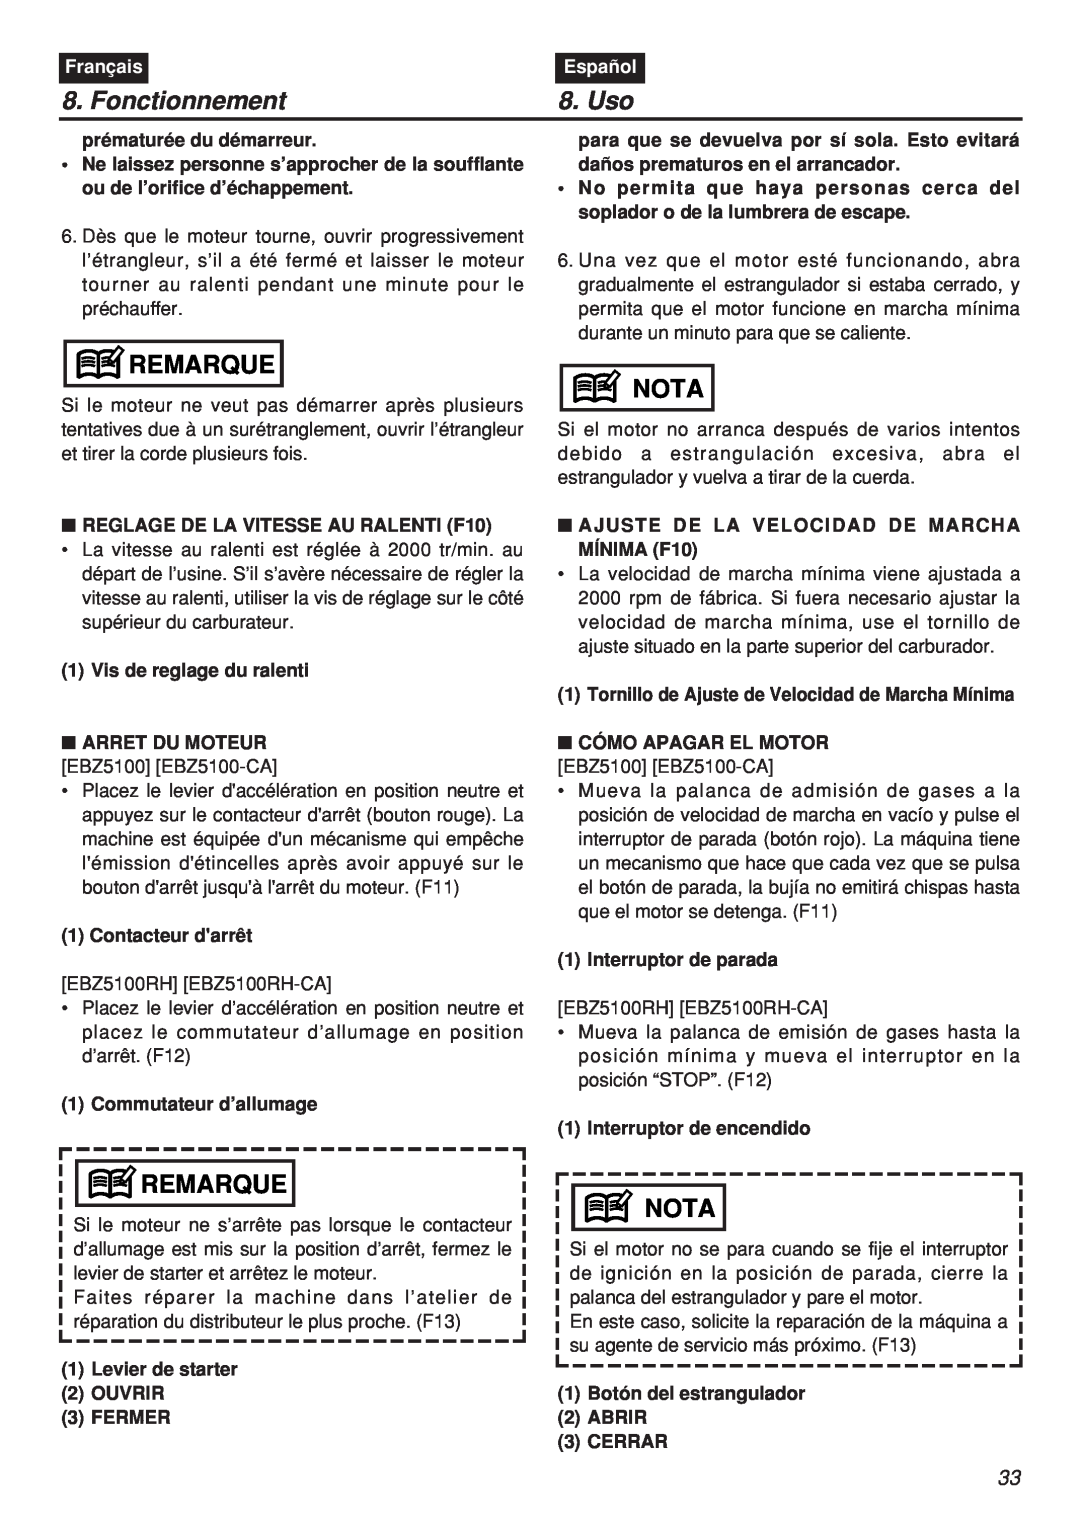 Zenoah EBZ100-CA, EBZ100RH manual Fonctionnement, Uso, Remarque, Nota, Français, Español 